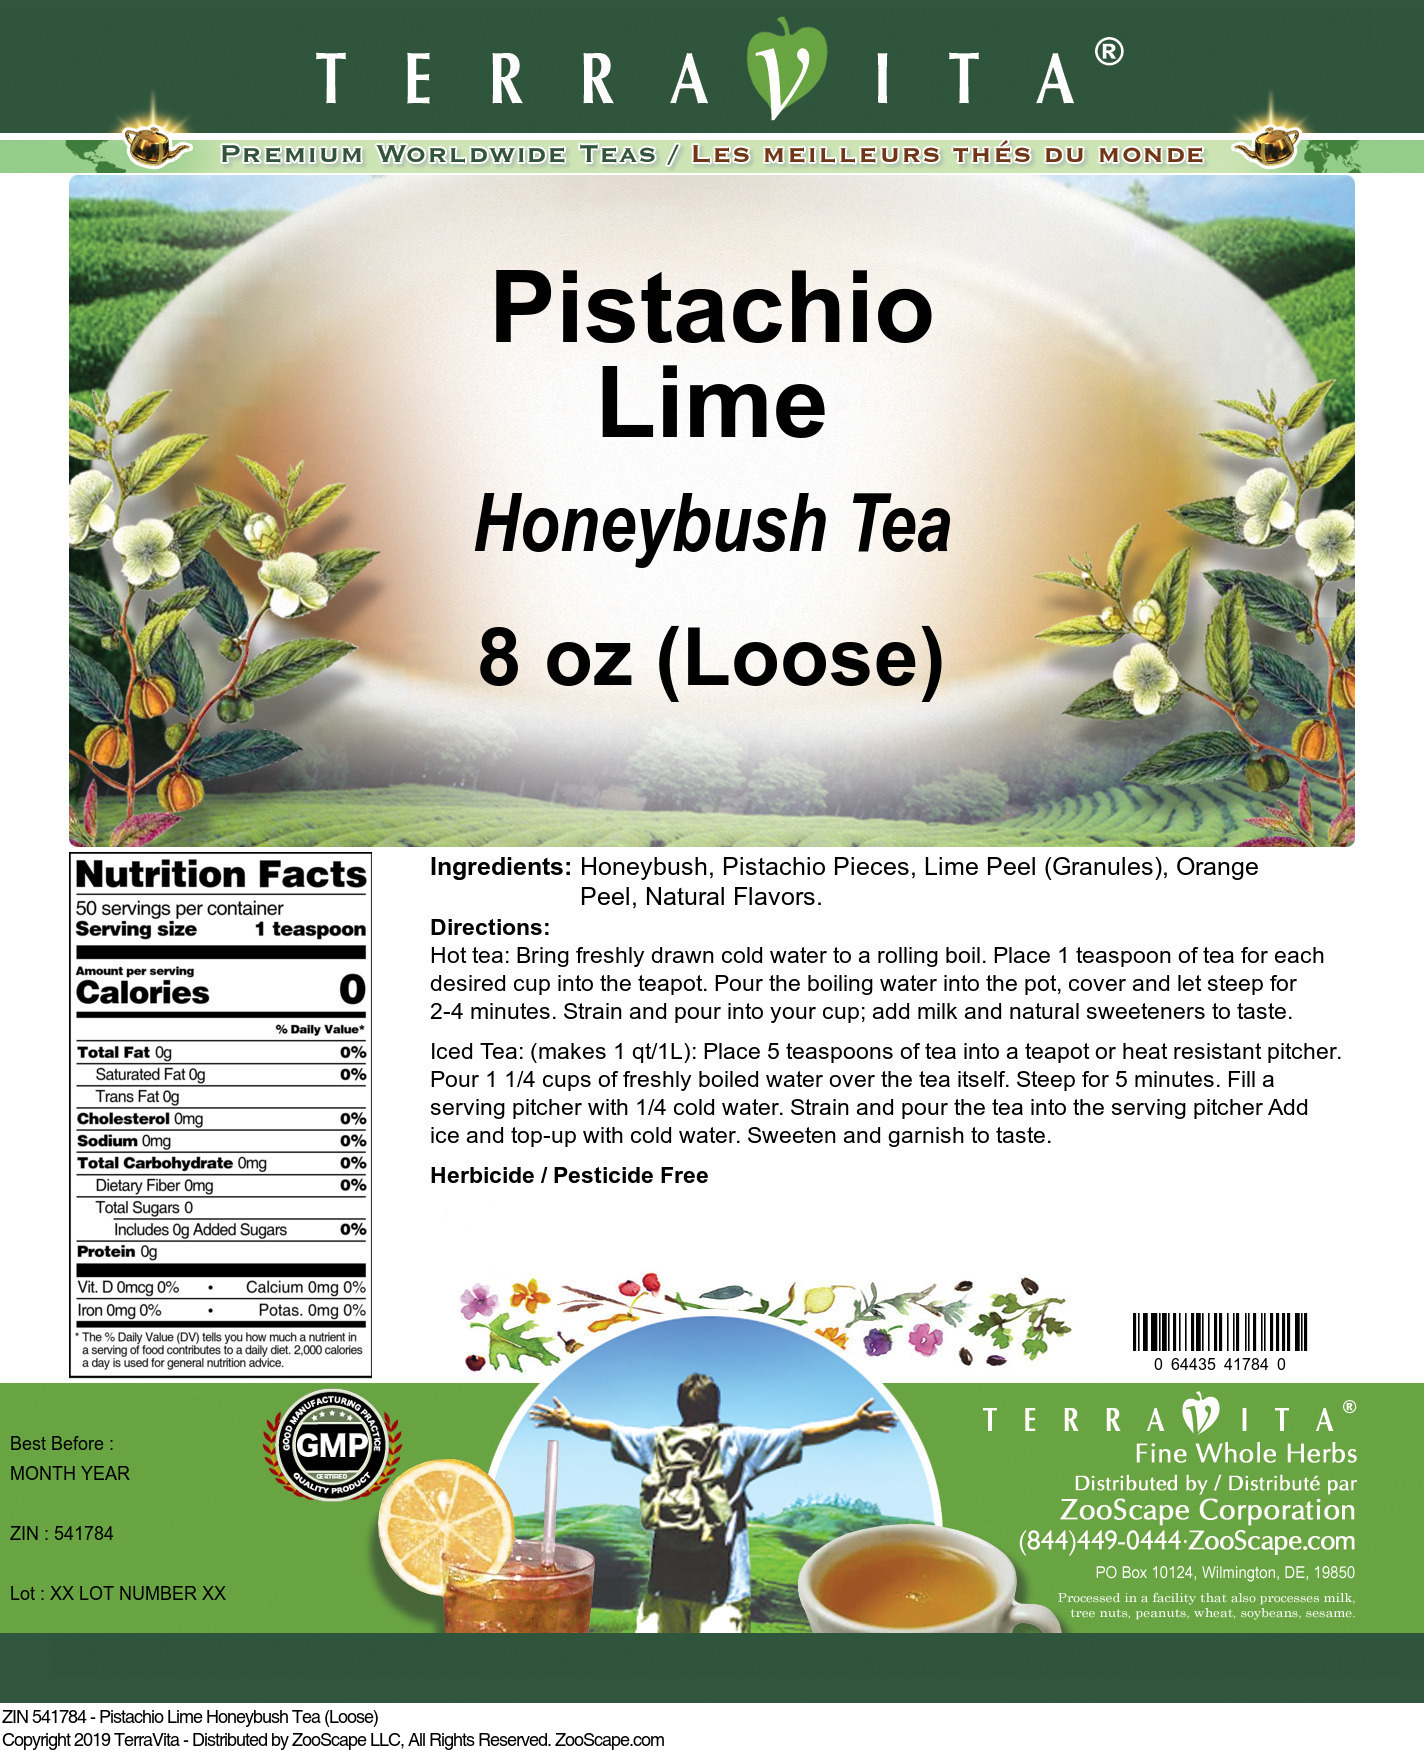 Pistachio Lime Honeybush Tea (Loose) - Label